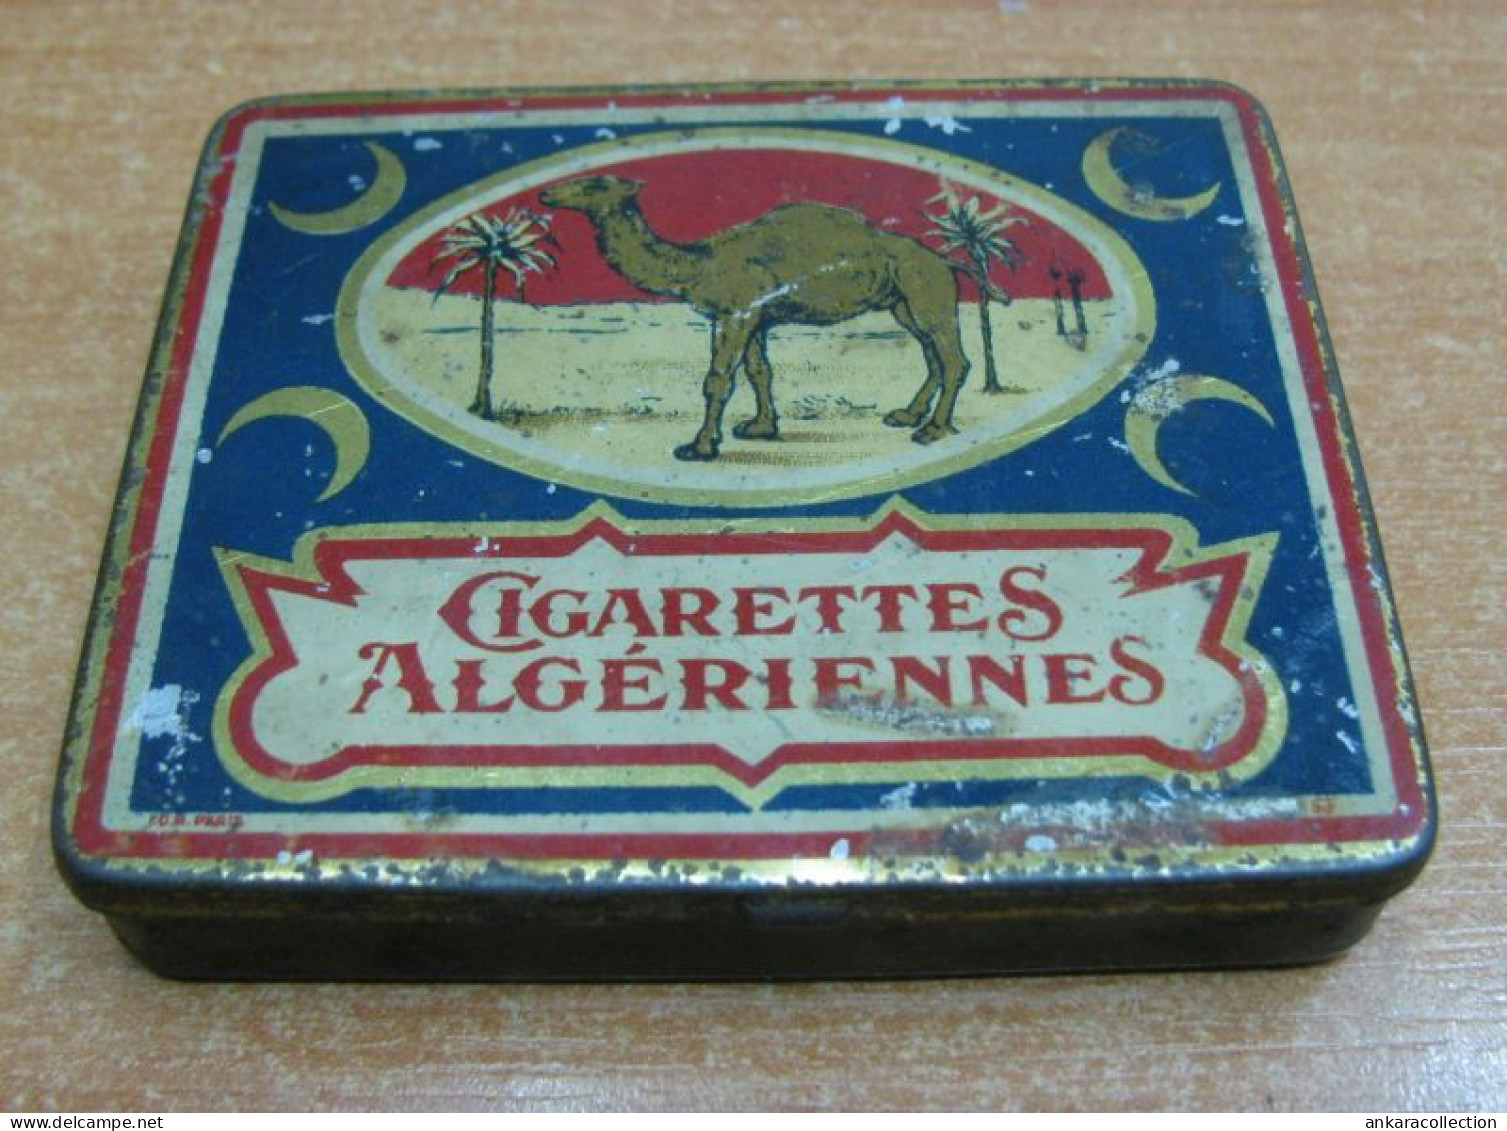 AC - ALGERIENNES CIGARETTES CIGARETTE - TOBACCO EMPTY VINTAGE TIN BOX - Cajas Para Tabaco (vacios)